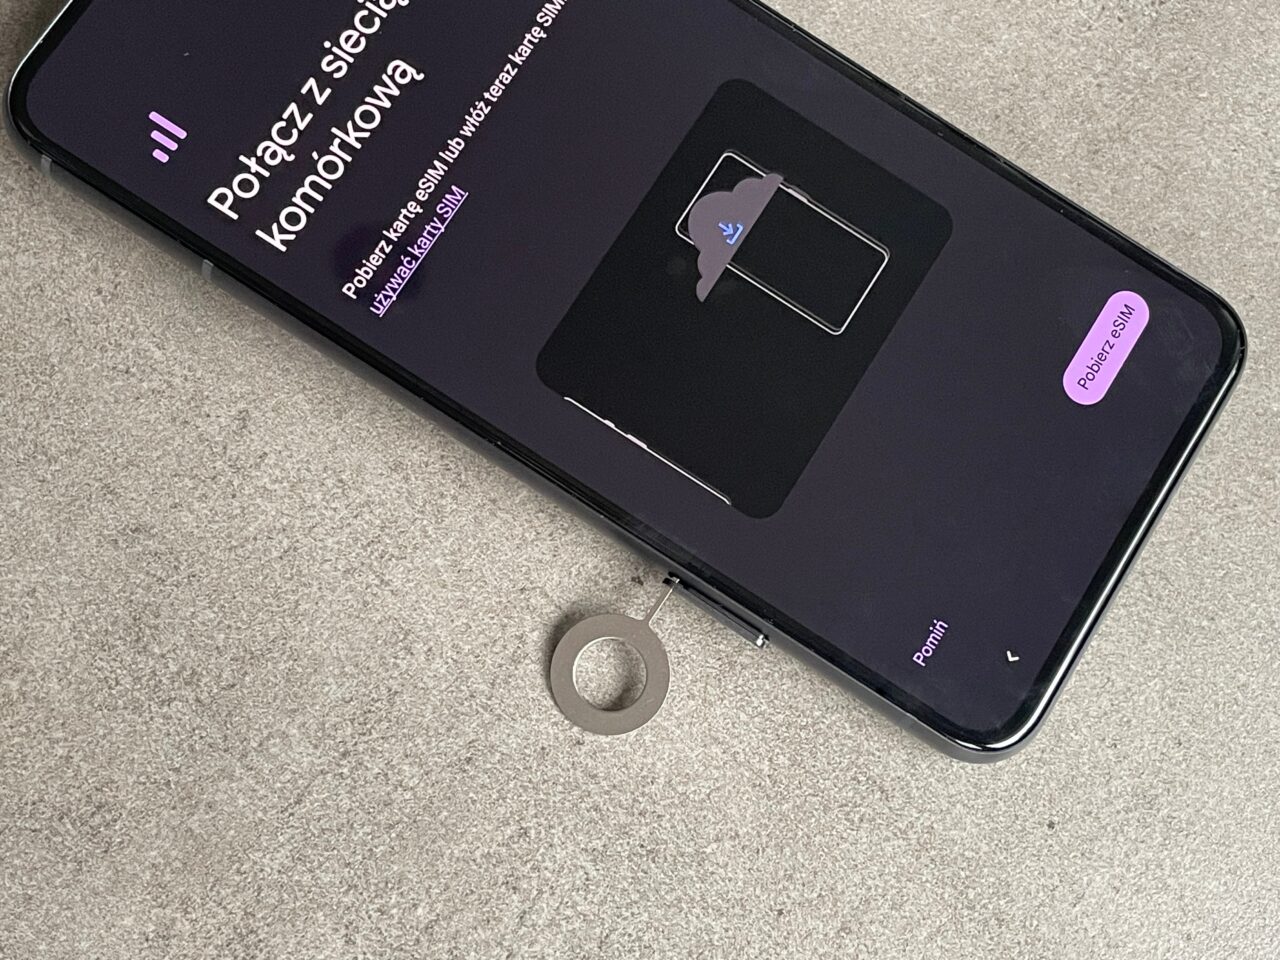 Czarny smartfon leży na szarym podłożu z ekranem prezentującym wiadomość o braku karty SIM i grafiką karty SIM w środku, obok dwie naklejki z napisem "Podłącz się" i "Pomiń".